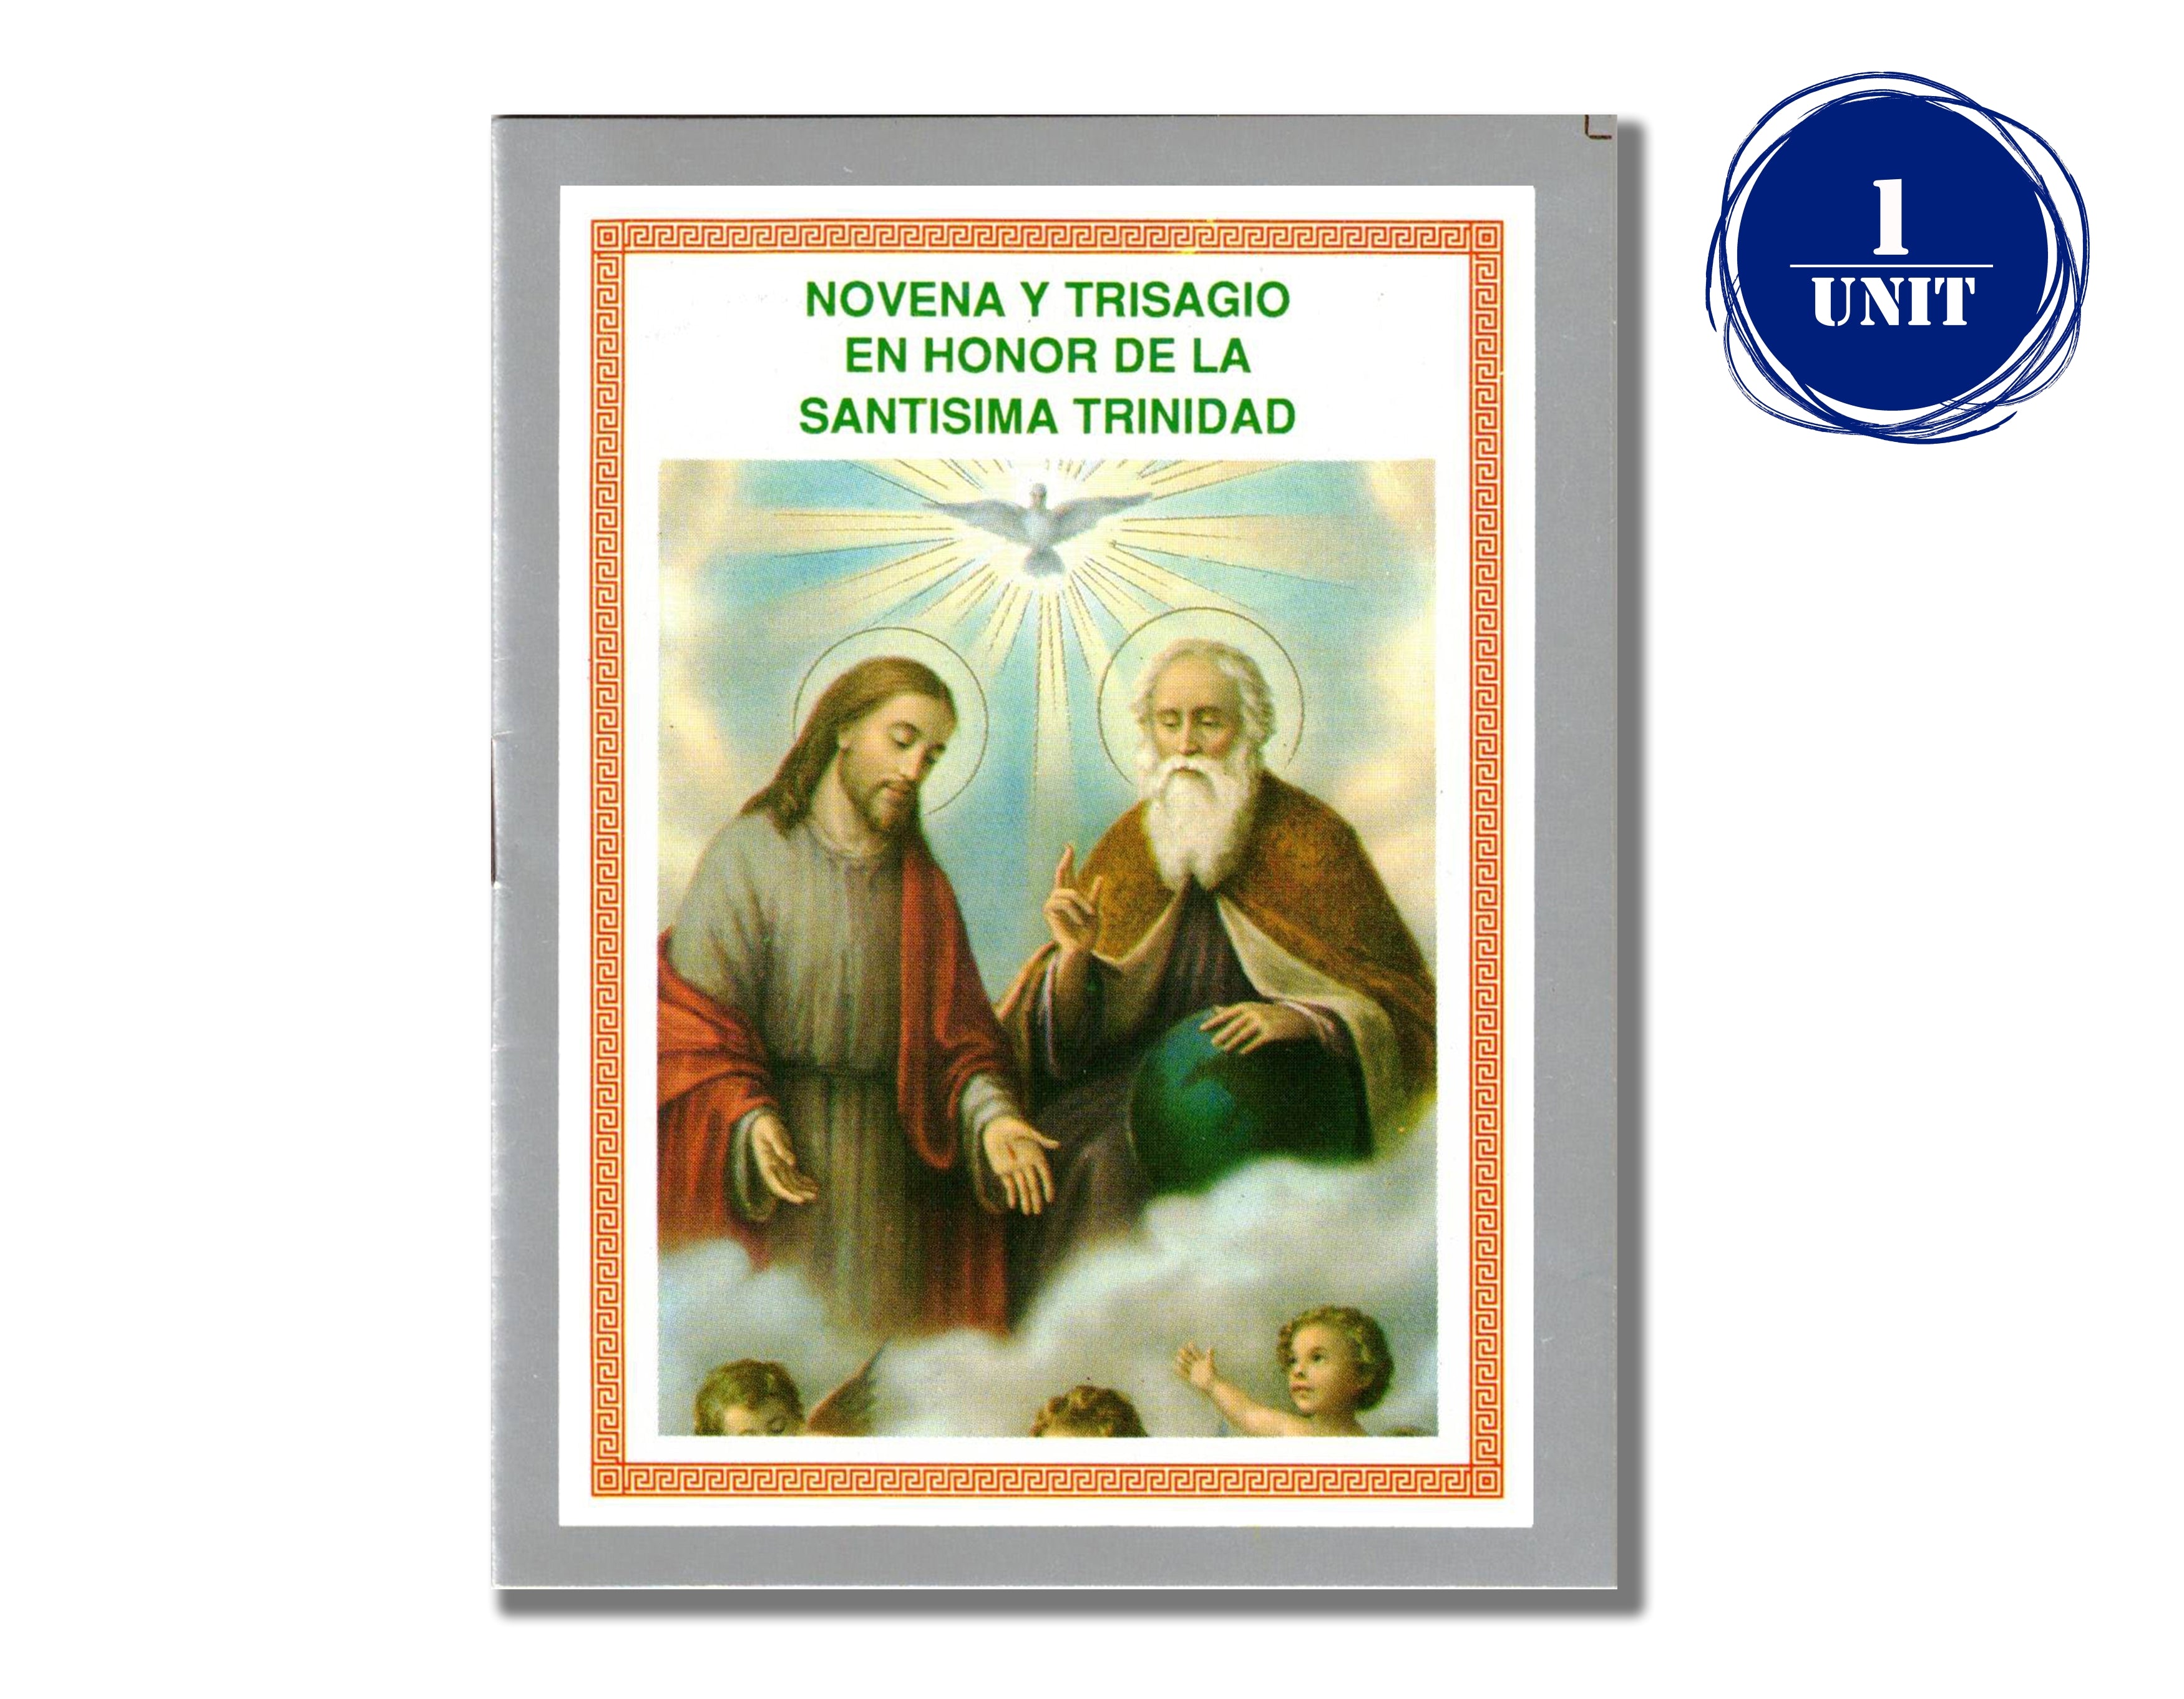 Novena y Trisagio en Honor de La Santisima Trinidad